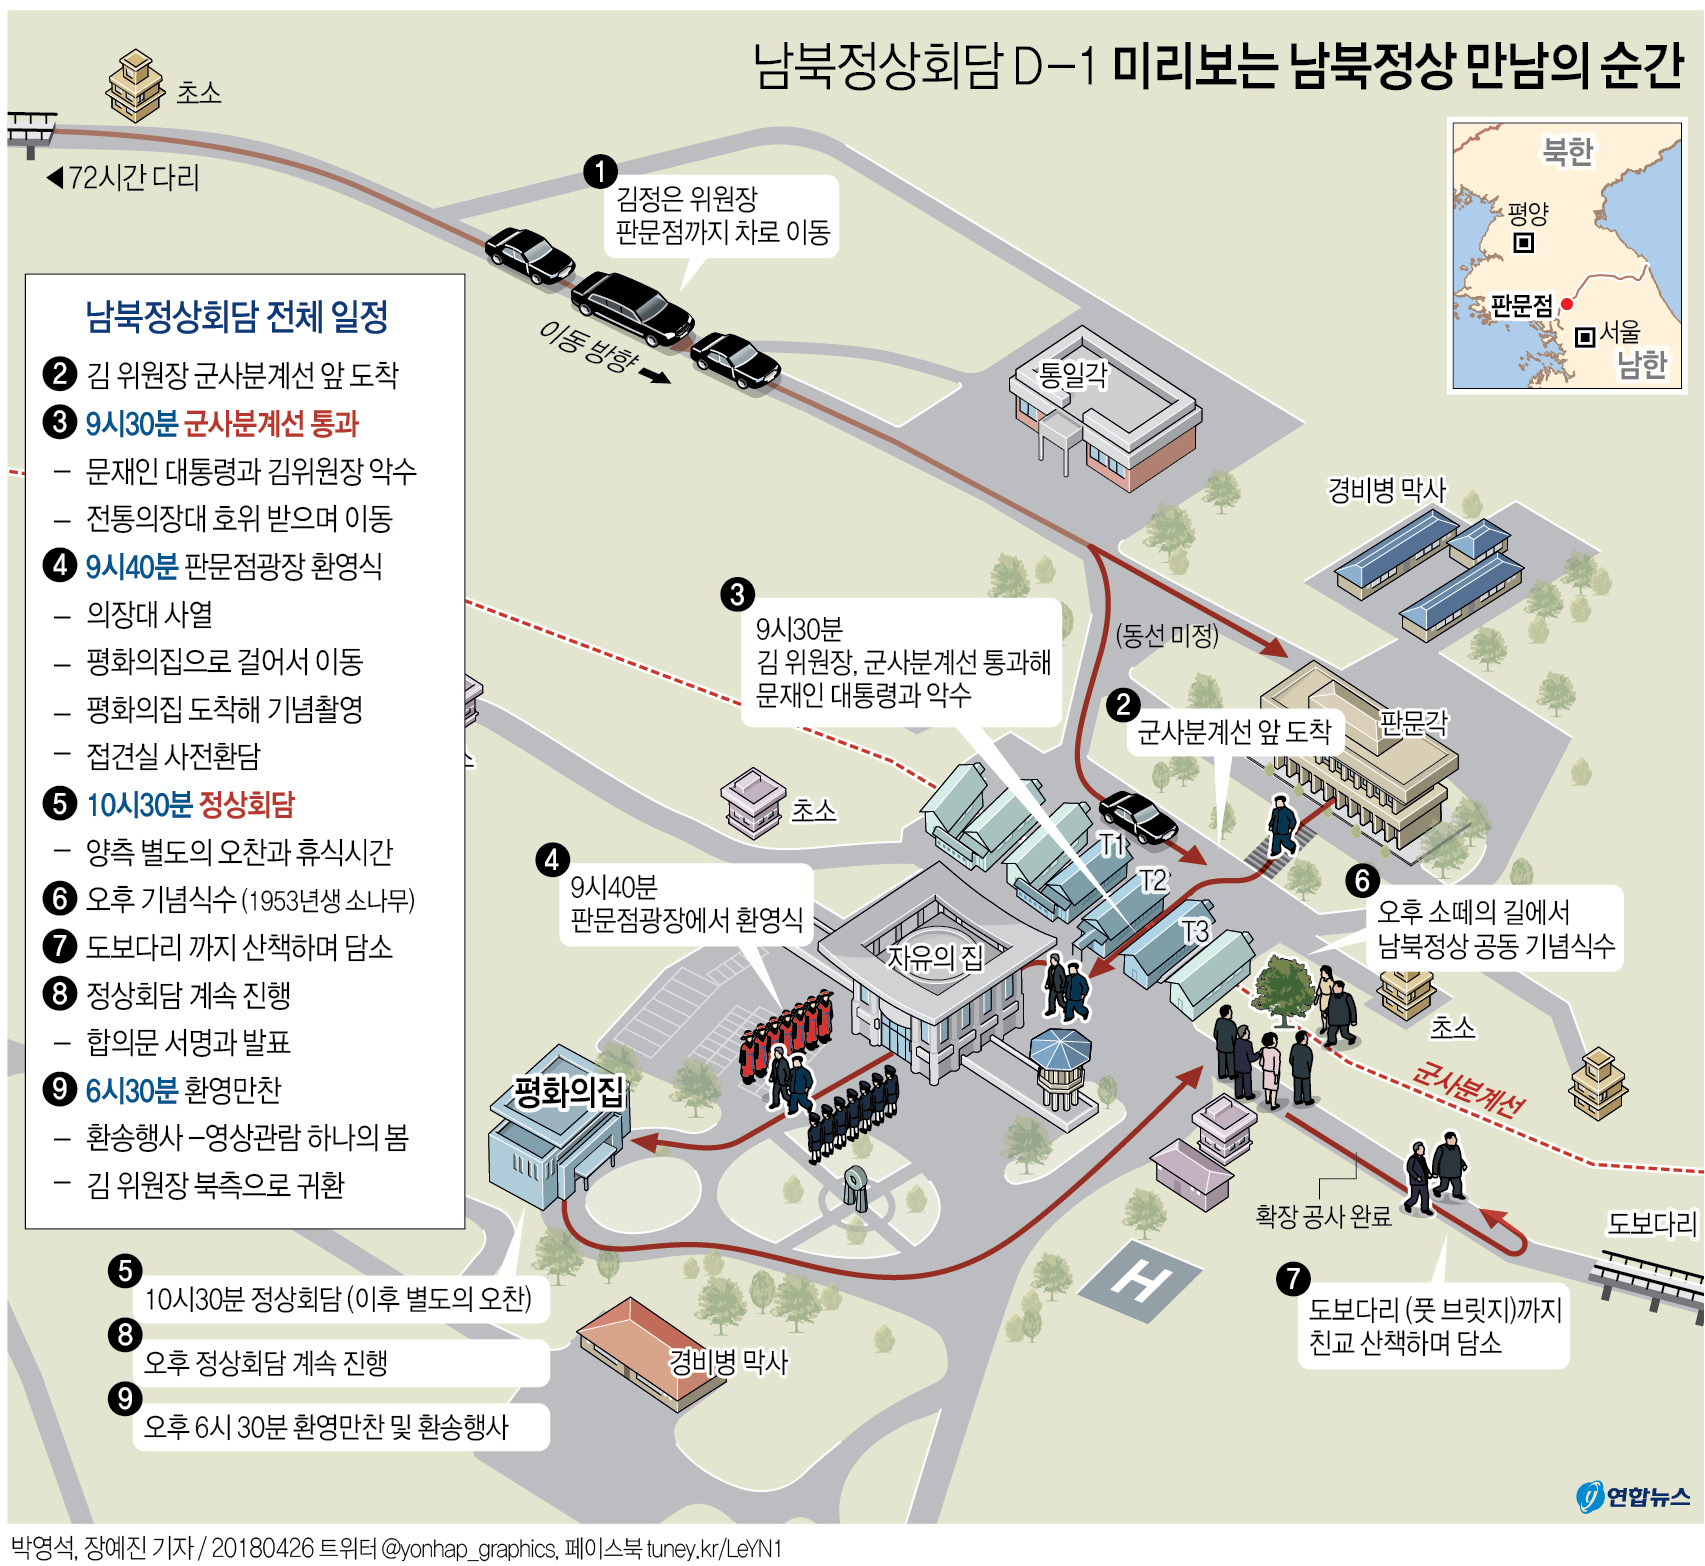 남북 정상회담 주요 일정